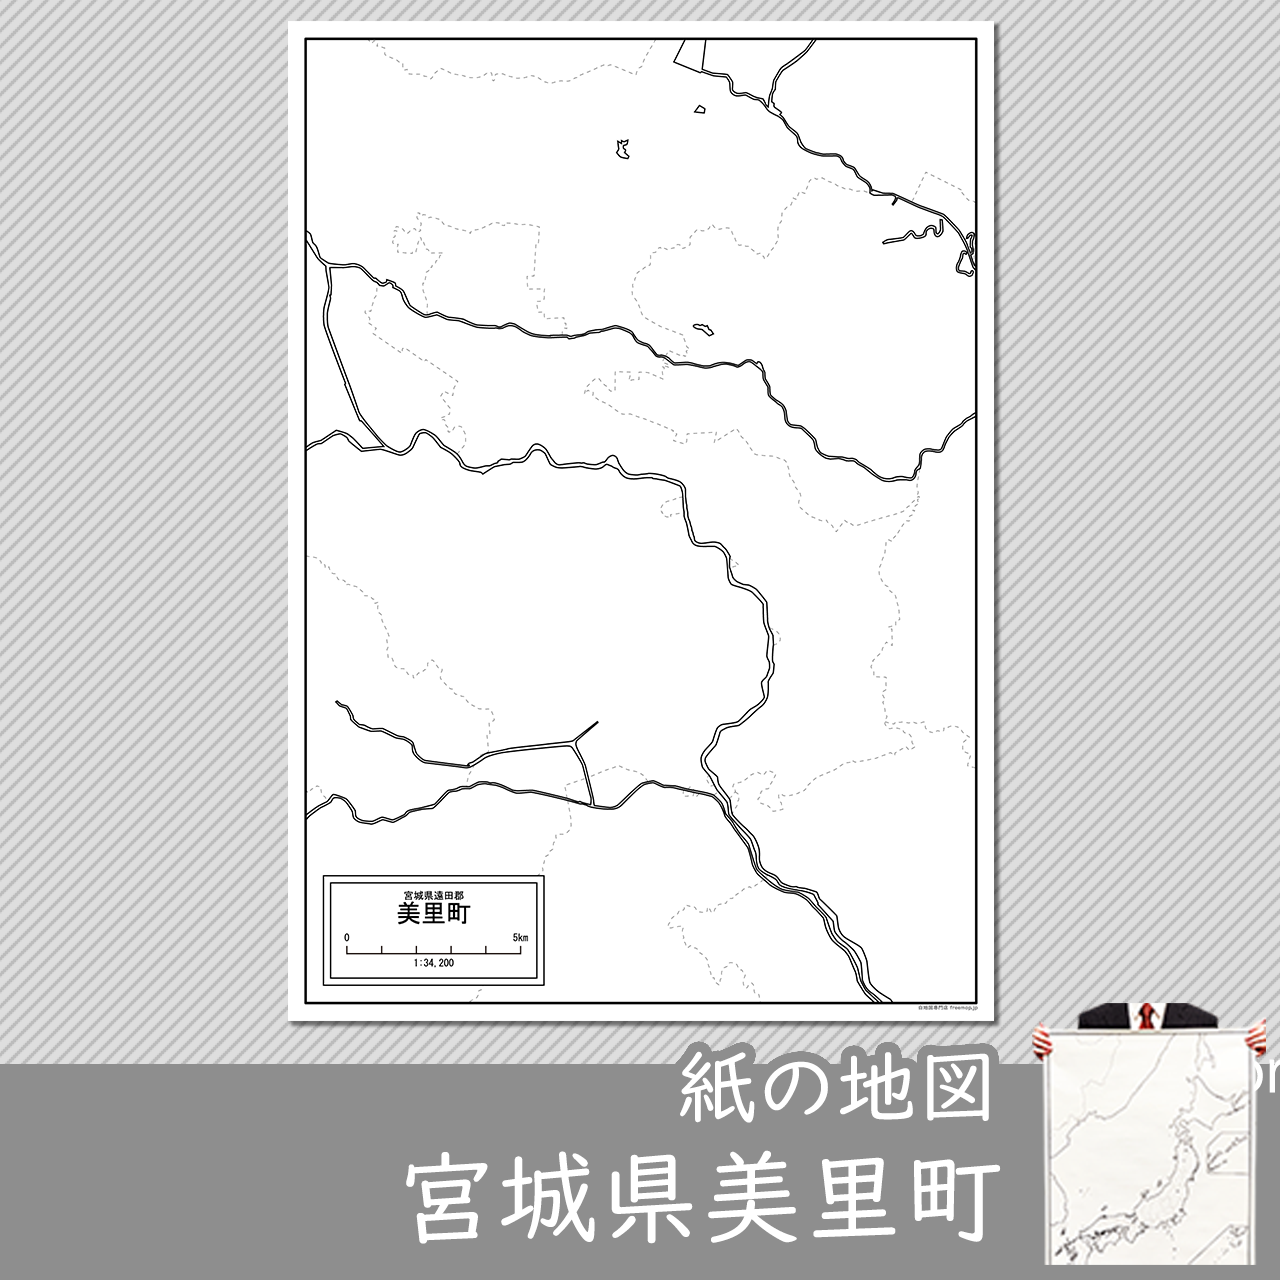 美里町の紙の白地図のサムネイル